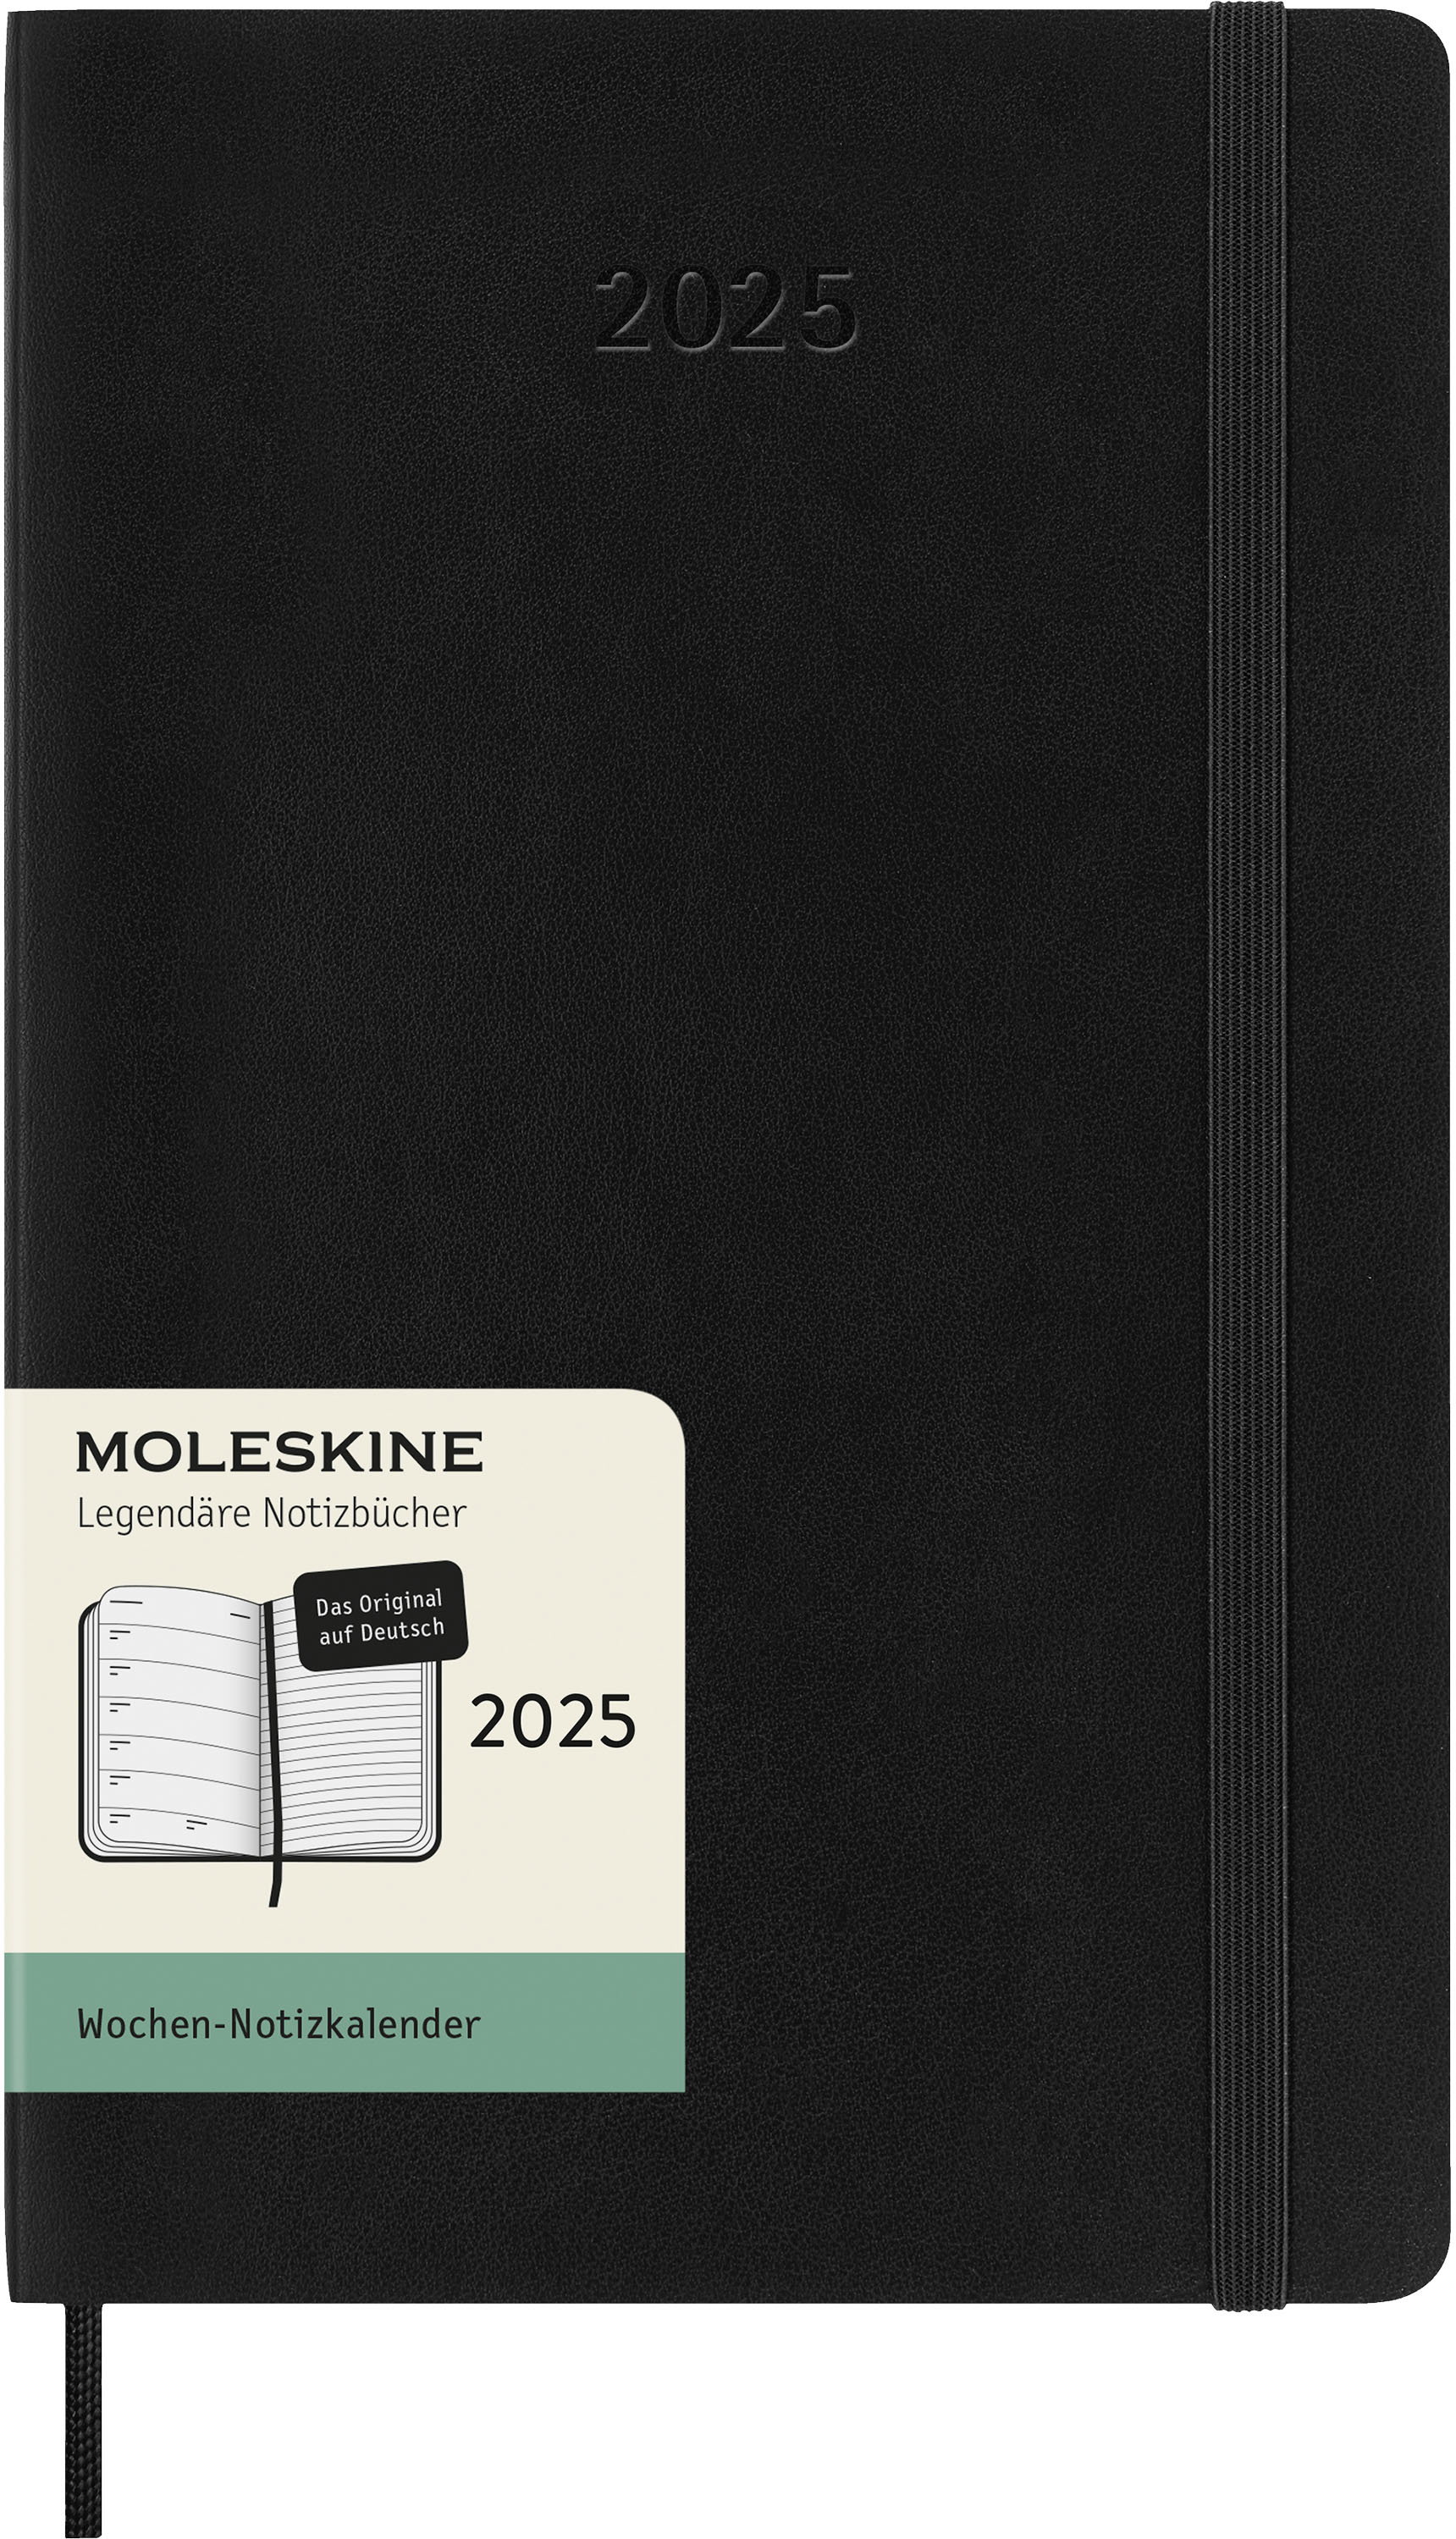 MOLESKINE Agenda Classic Large 2025 056999270308 1S/1P noir SC DE 13x21cm